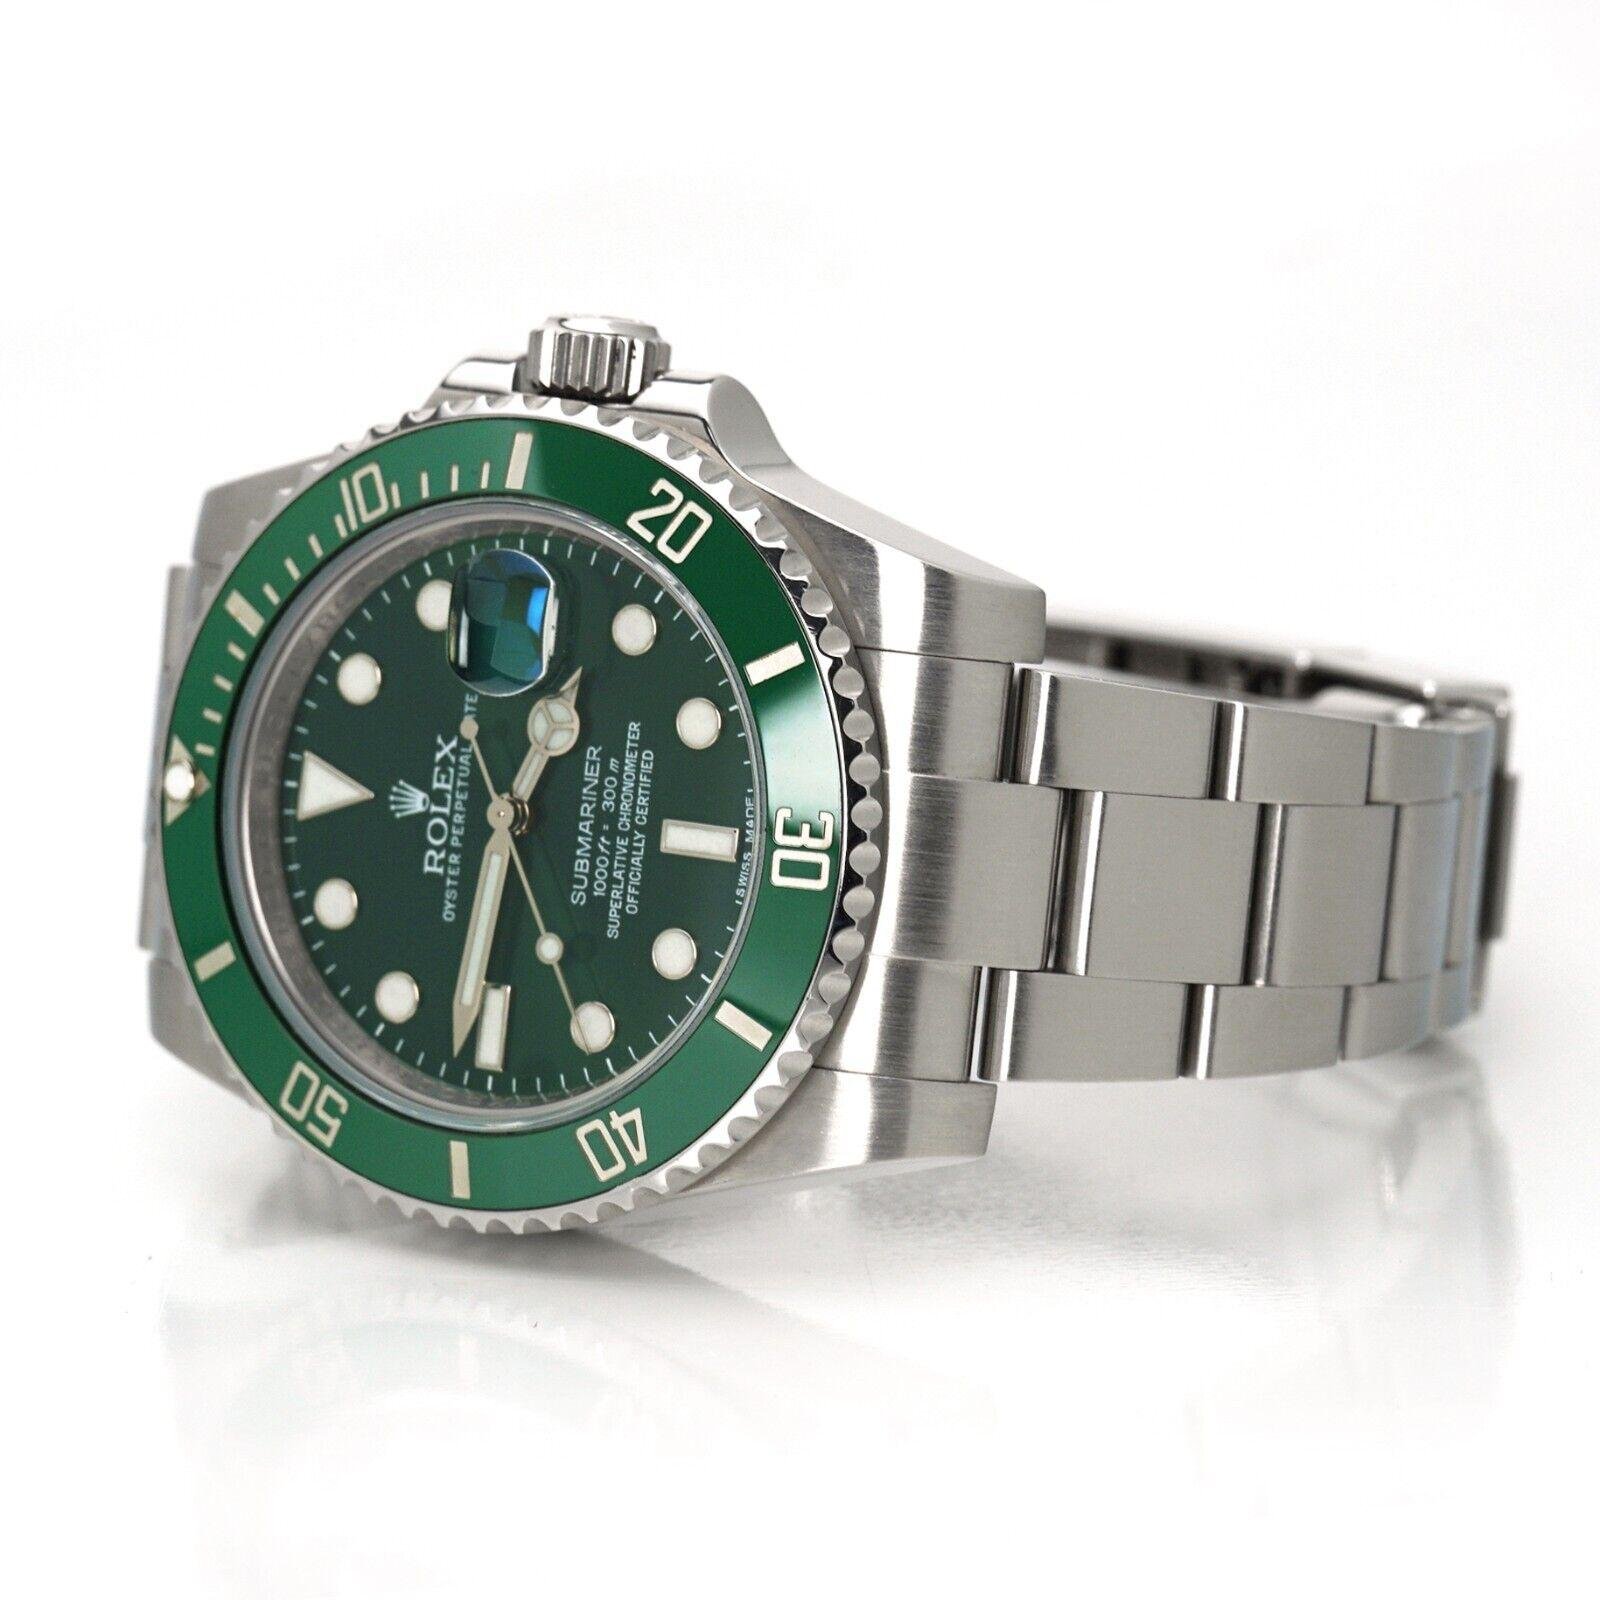 Rolex Submariner Date 'Hulk' Green Ceramic Steel Watch 116610 LV 3